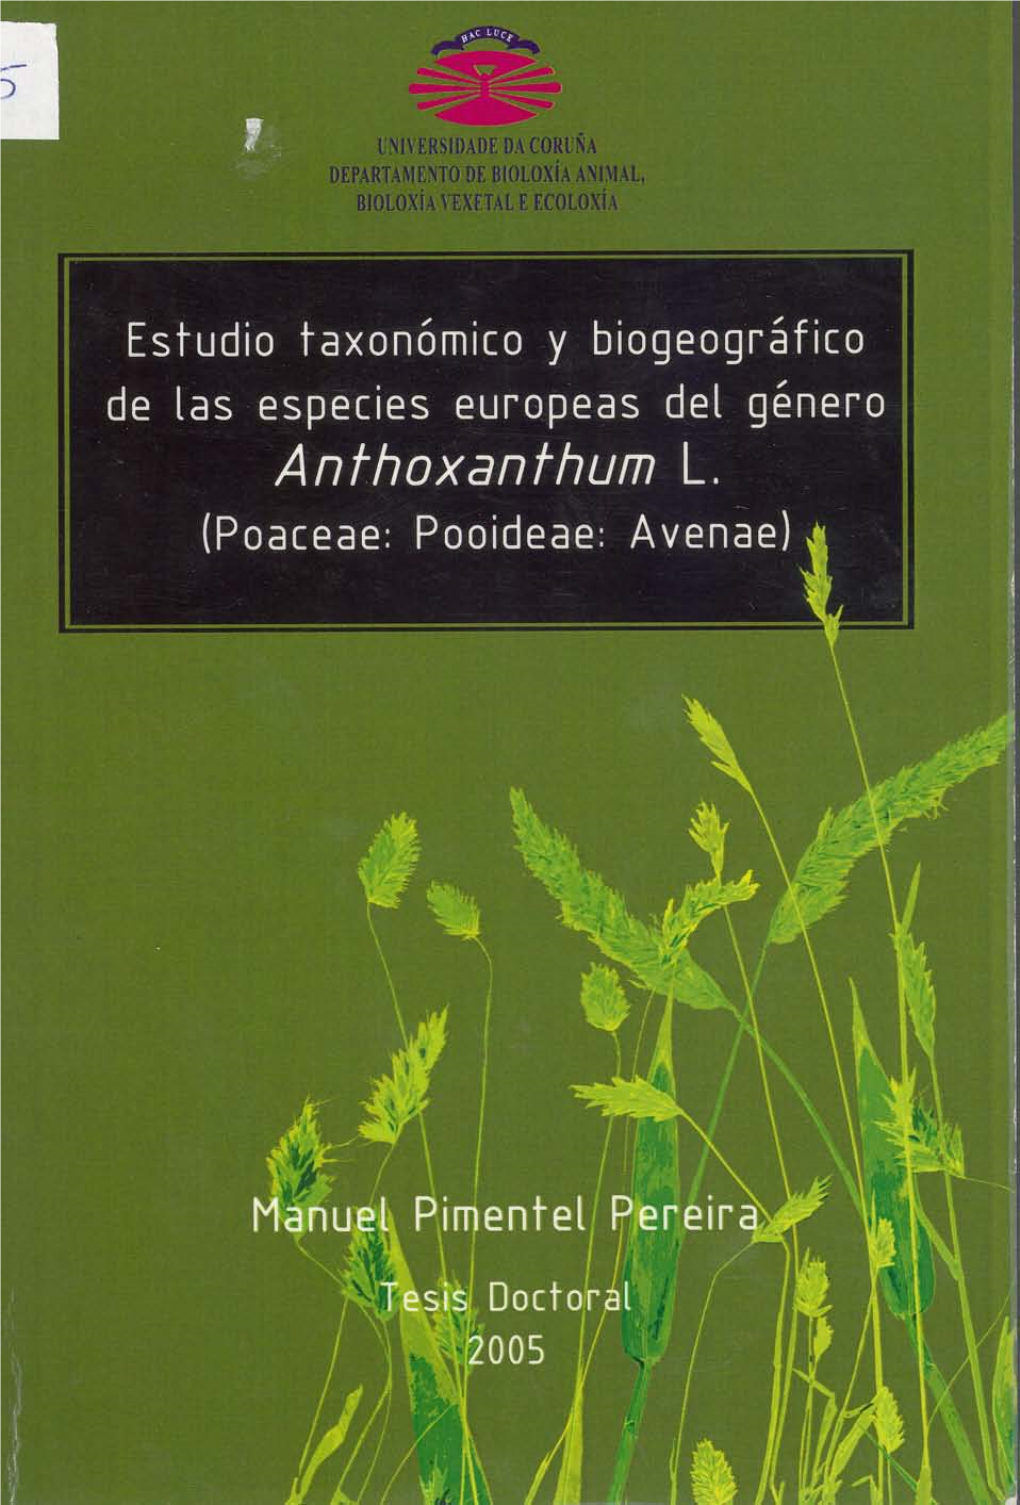 Estudio Taxonómico Y Biogeográfico De Las Especies Europeas Del Género .9Nthoxanthum L